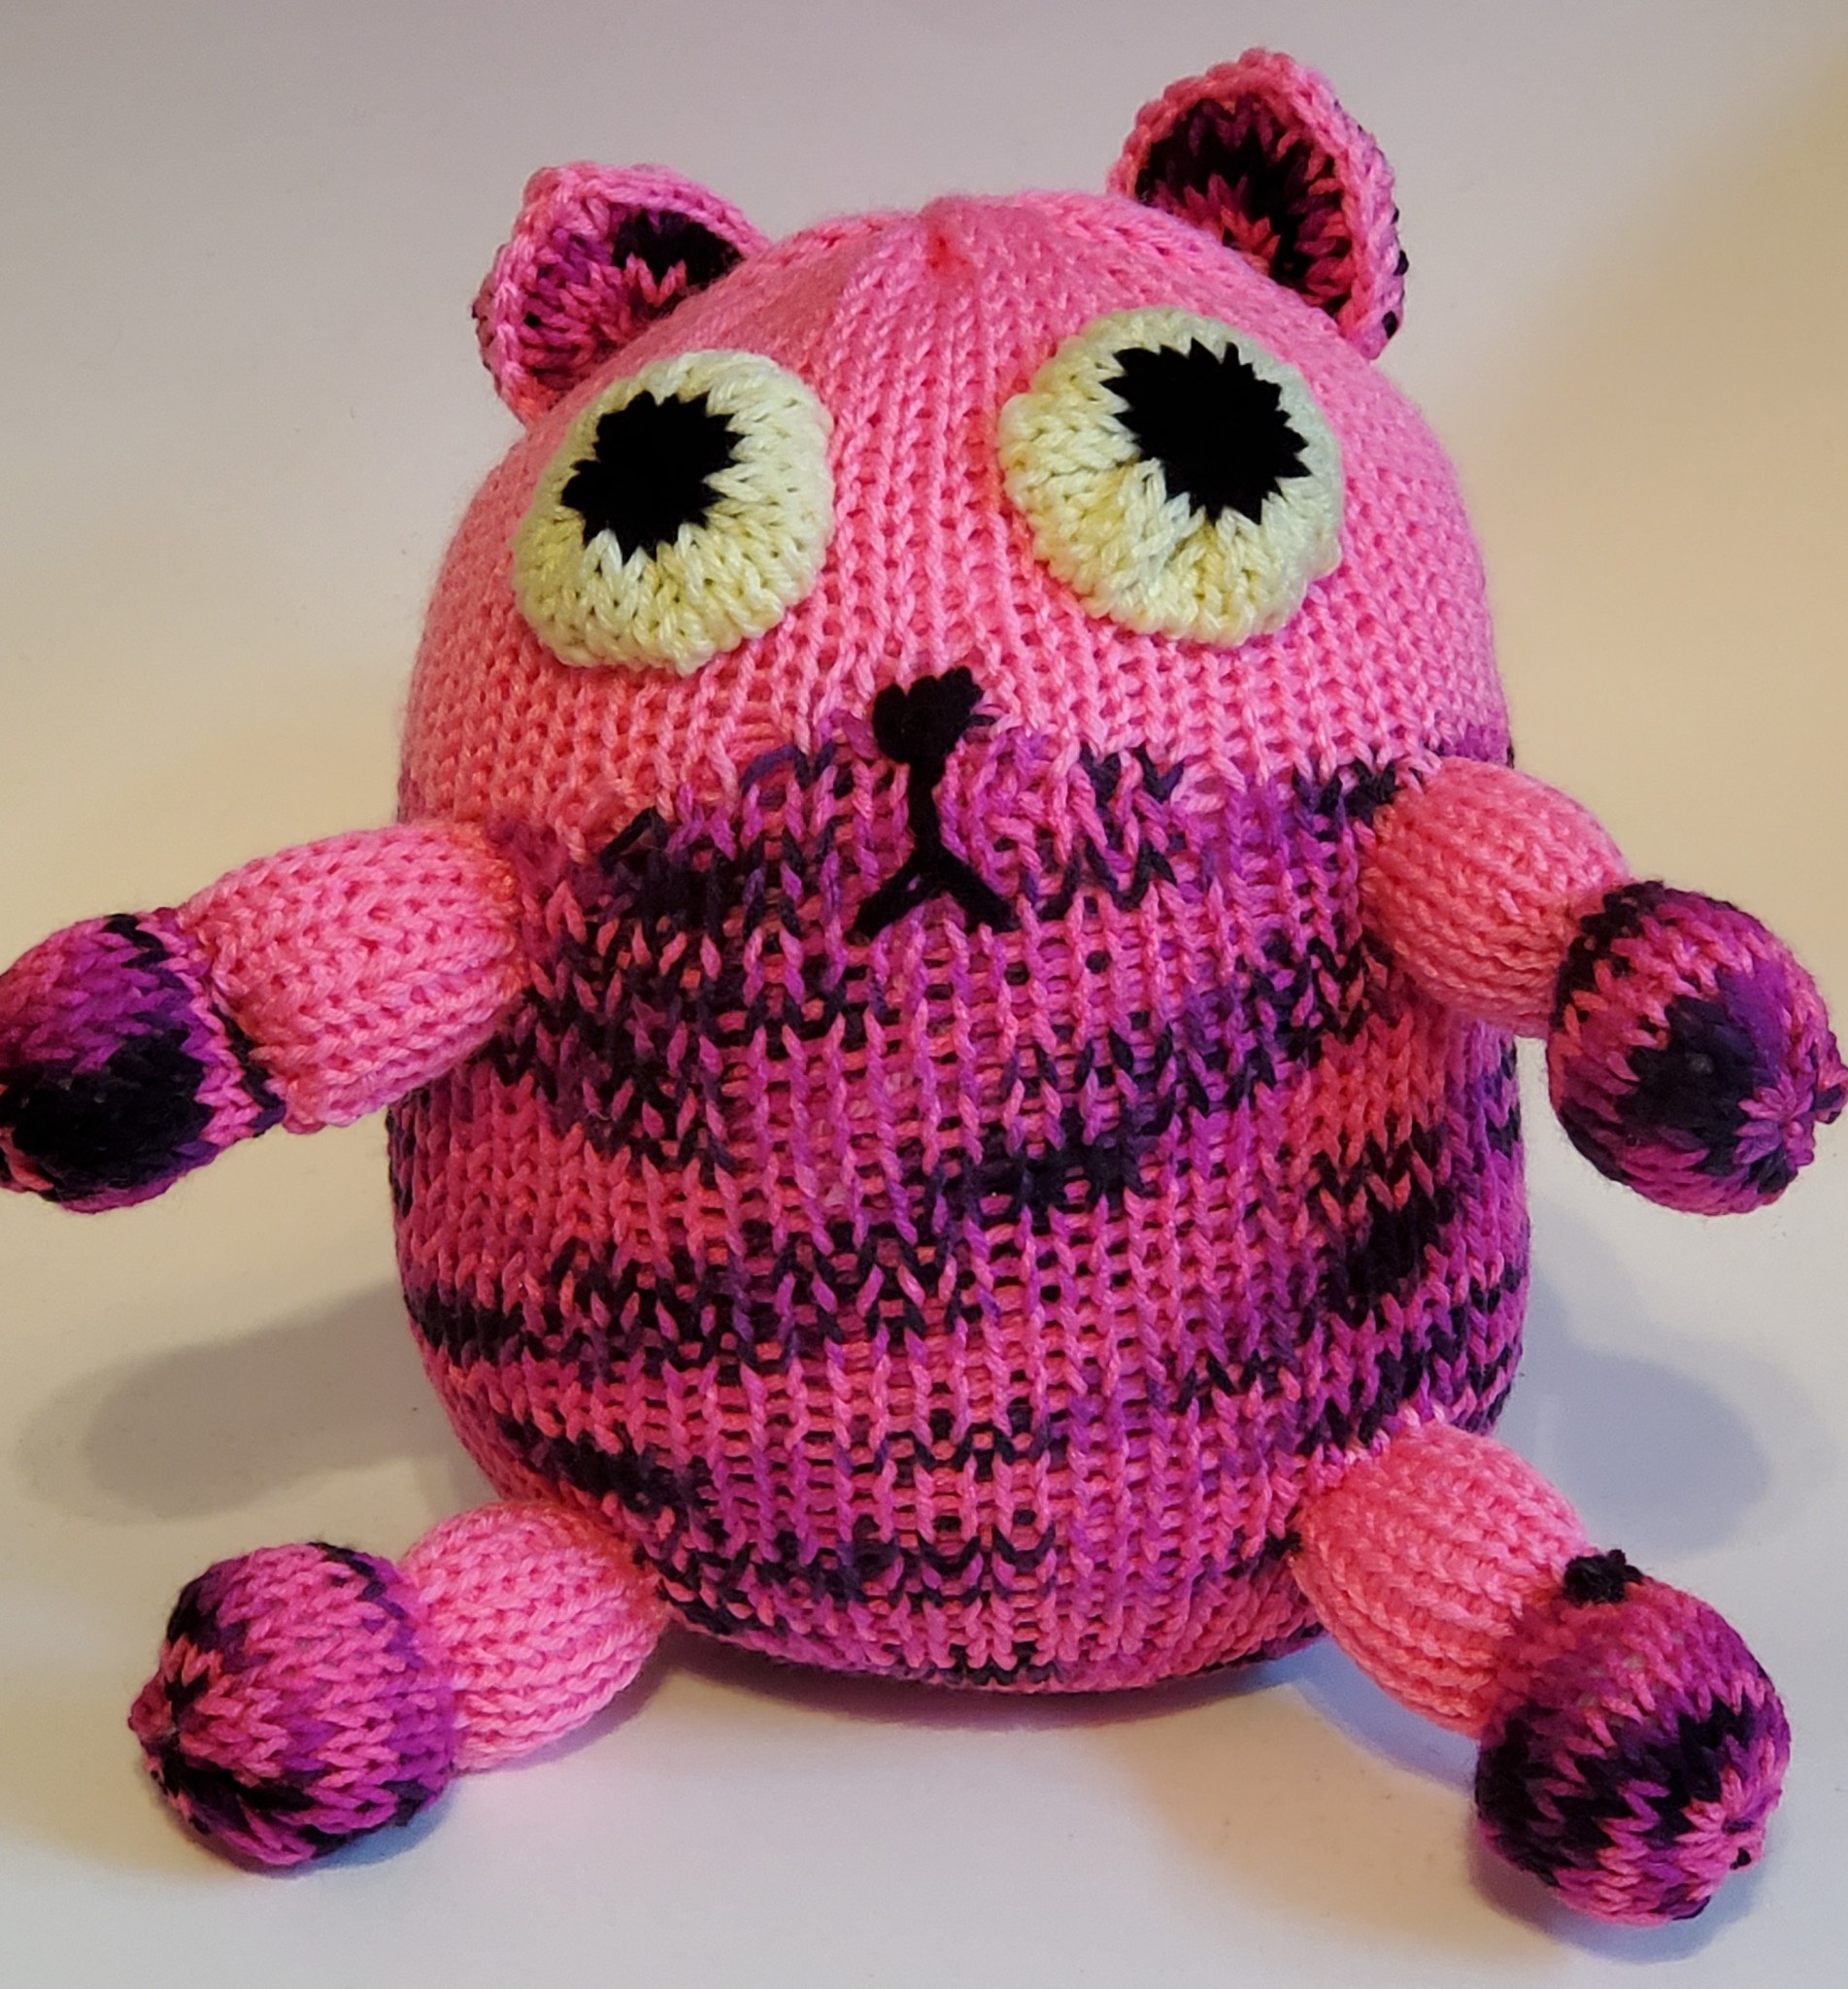 Knitting Patterns Galore - Fat Cat Plush Toy on Addi Express